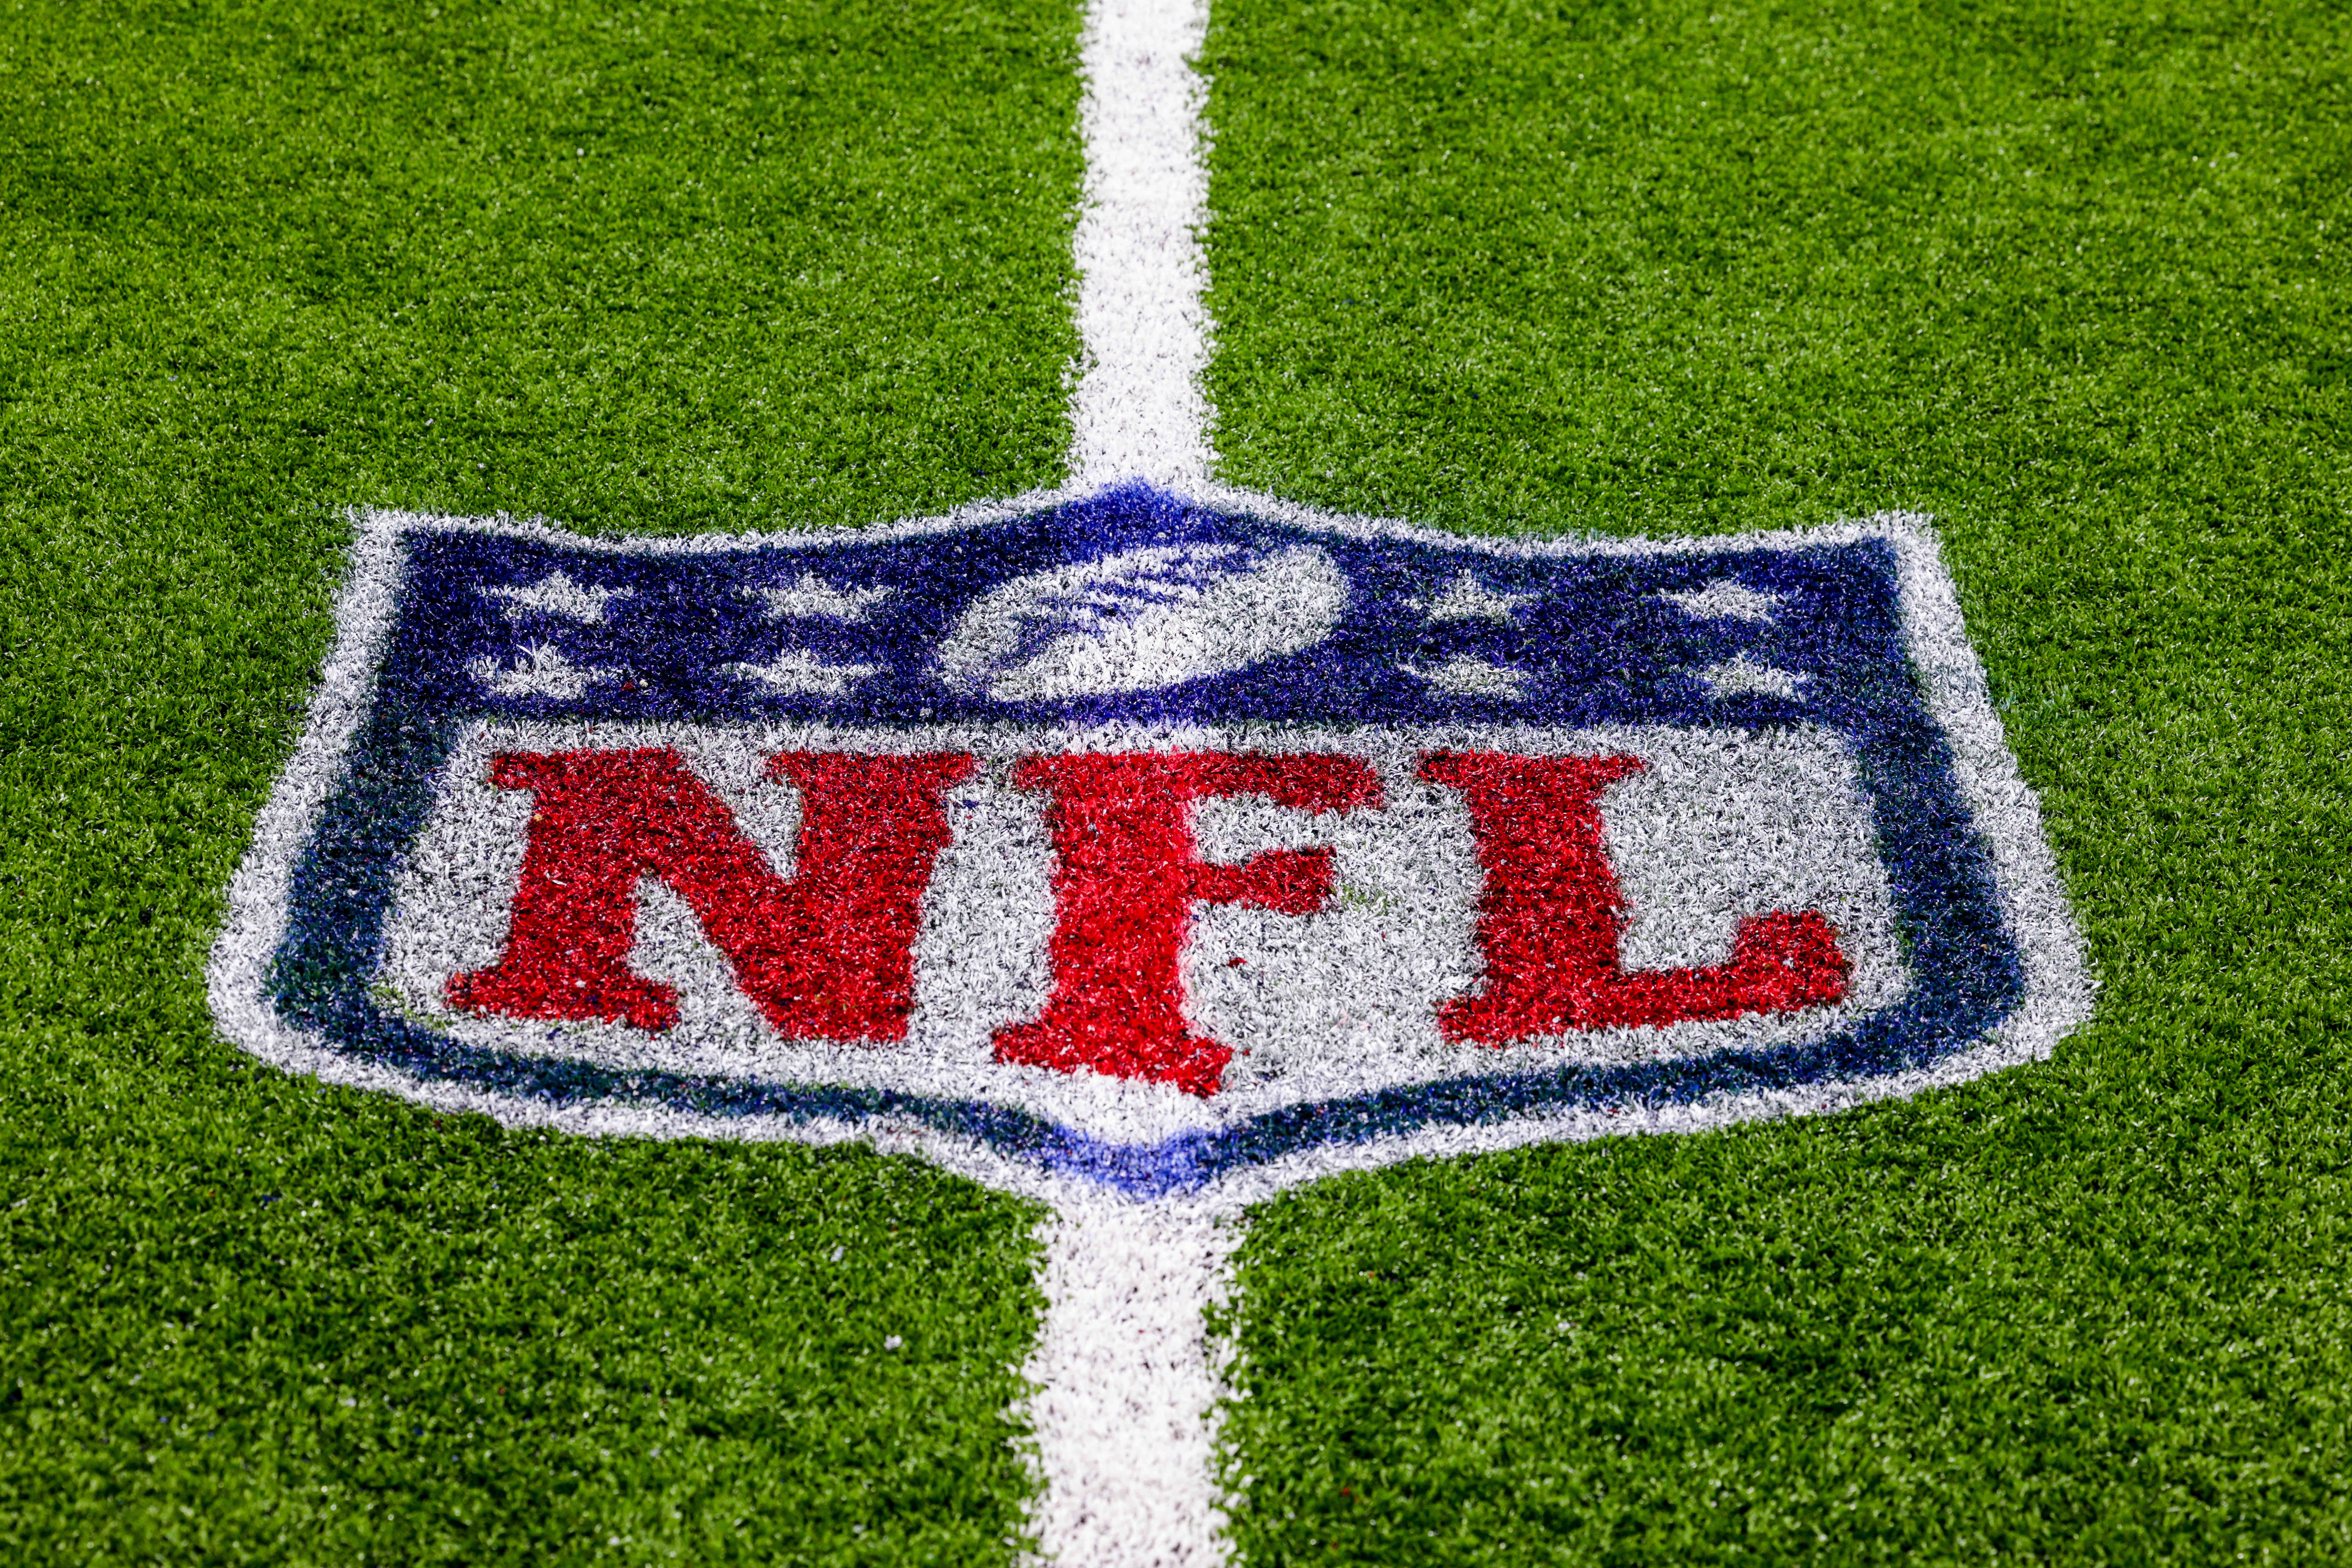 2023 NFL starting quarterback completion percentage leaders